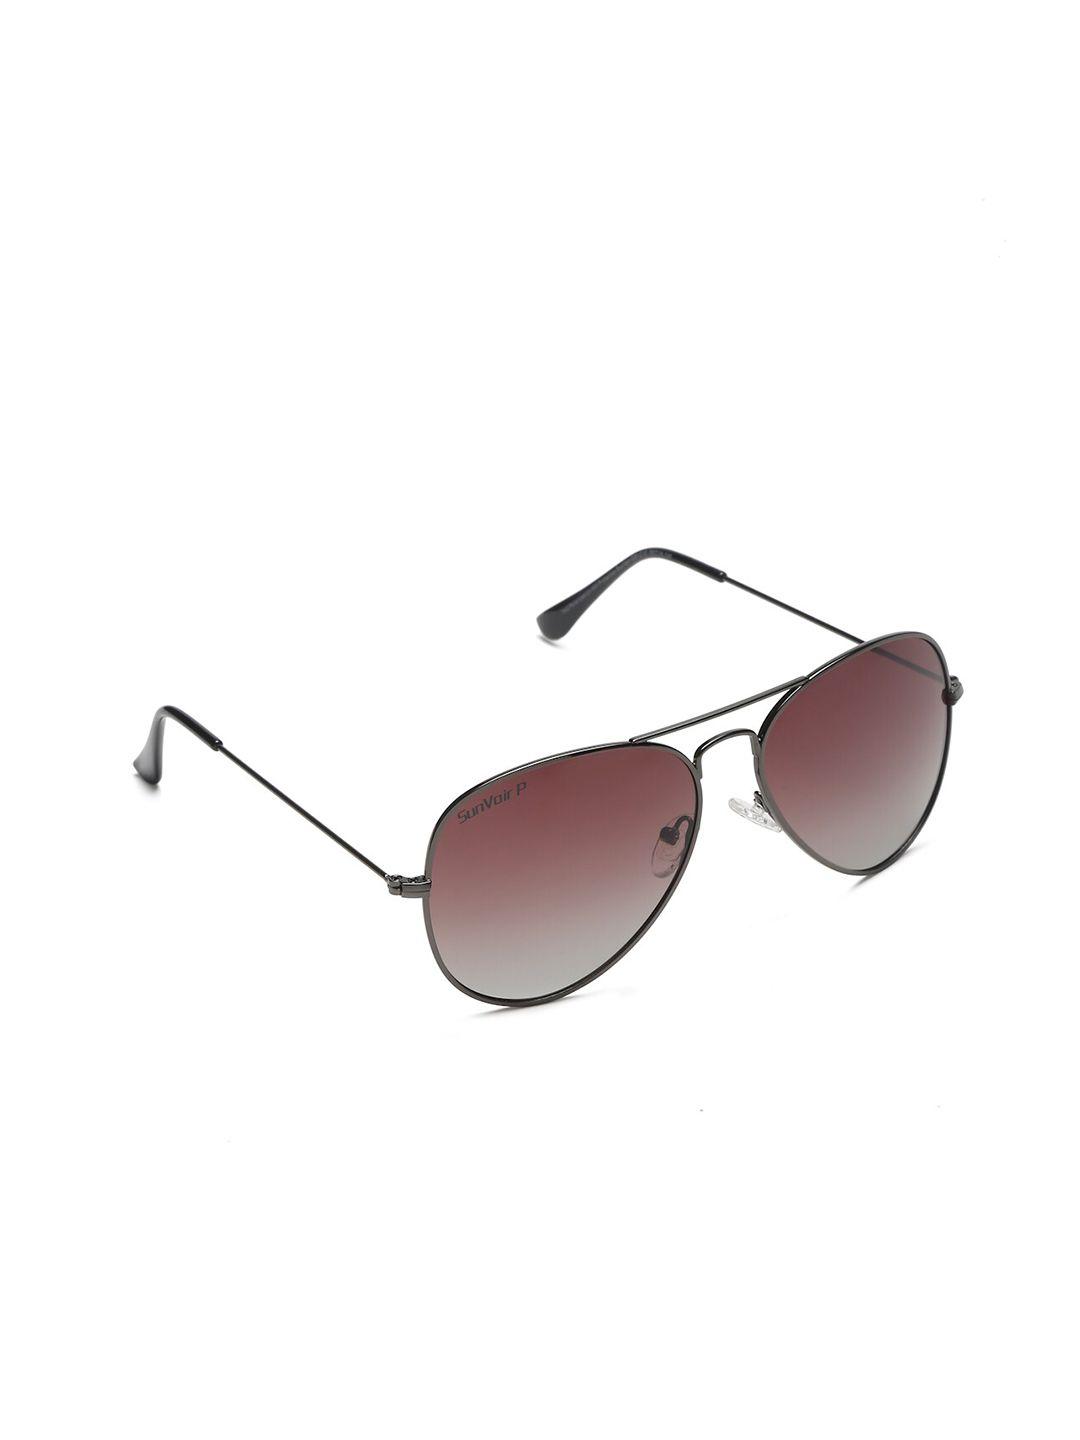 sunnies full rim aviator sunglasses with polarised lens sunnies-020-c10